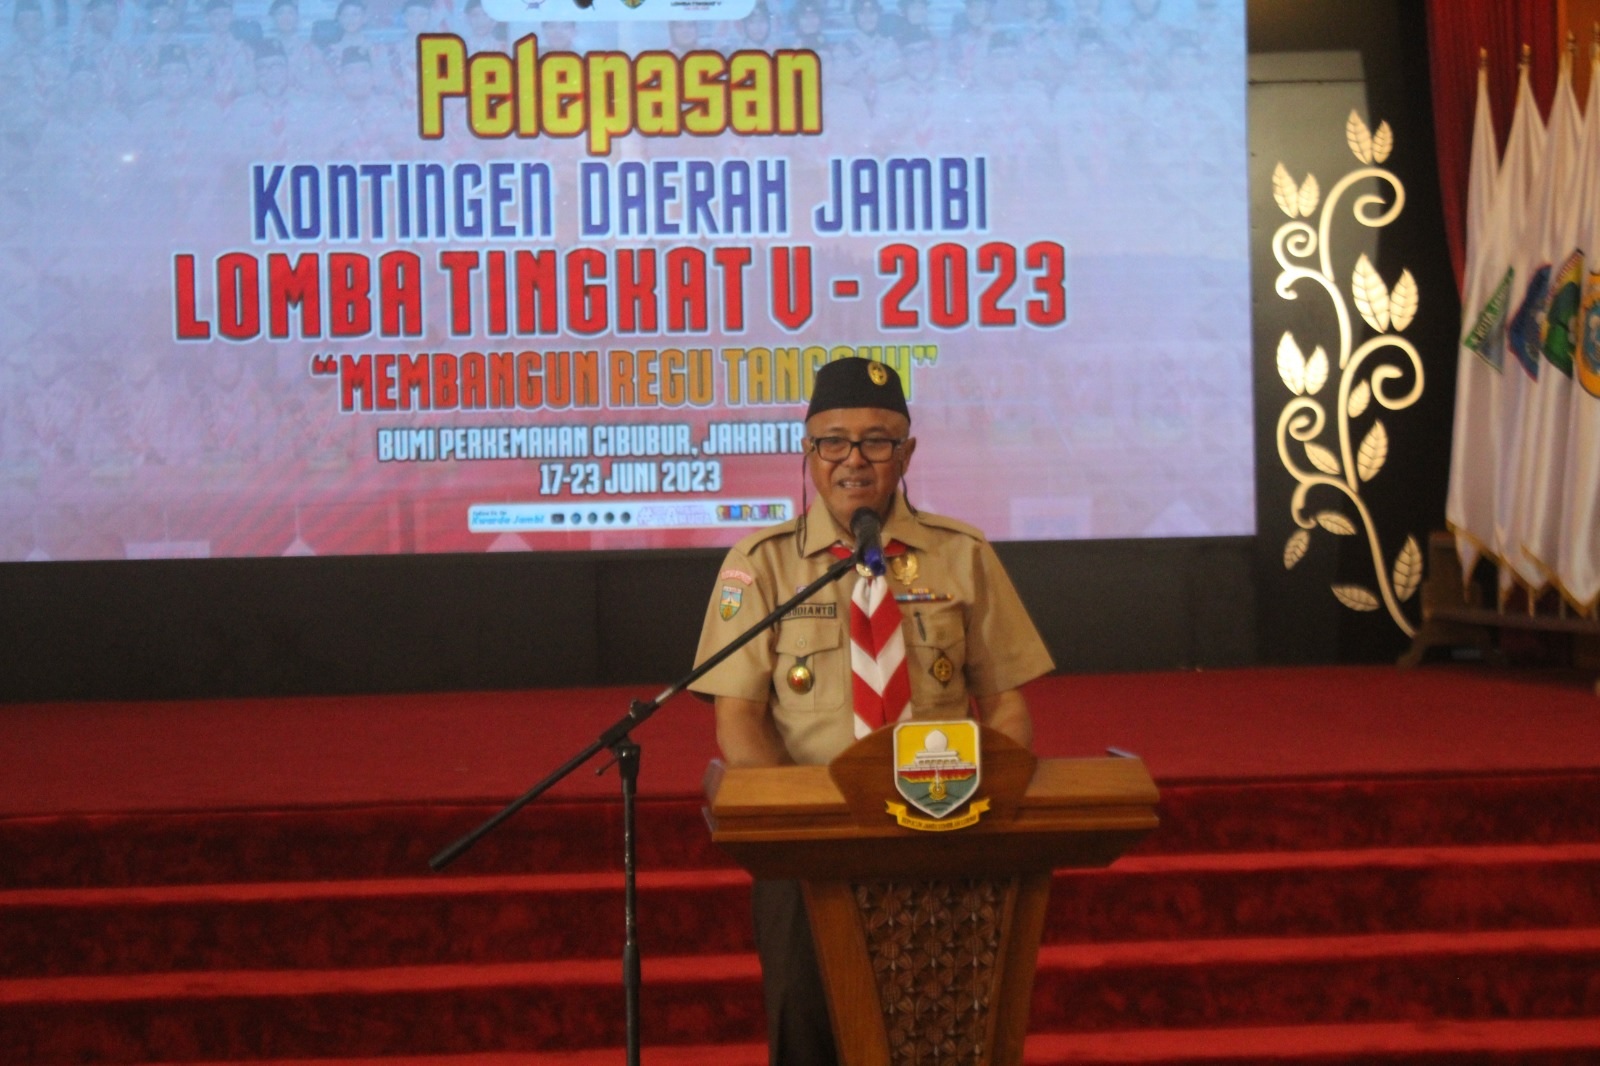 Raih Juara, Gubernur Bakal Siapkan Reward bagi Kontingen Daerah Jambi LT V 